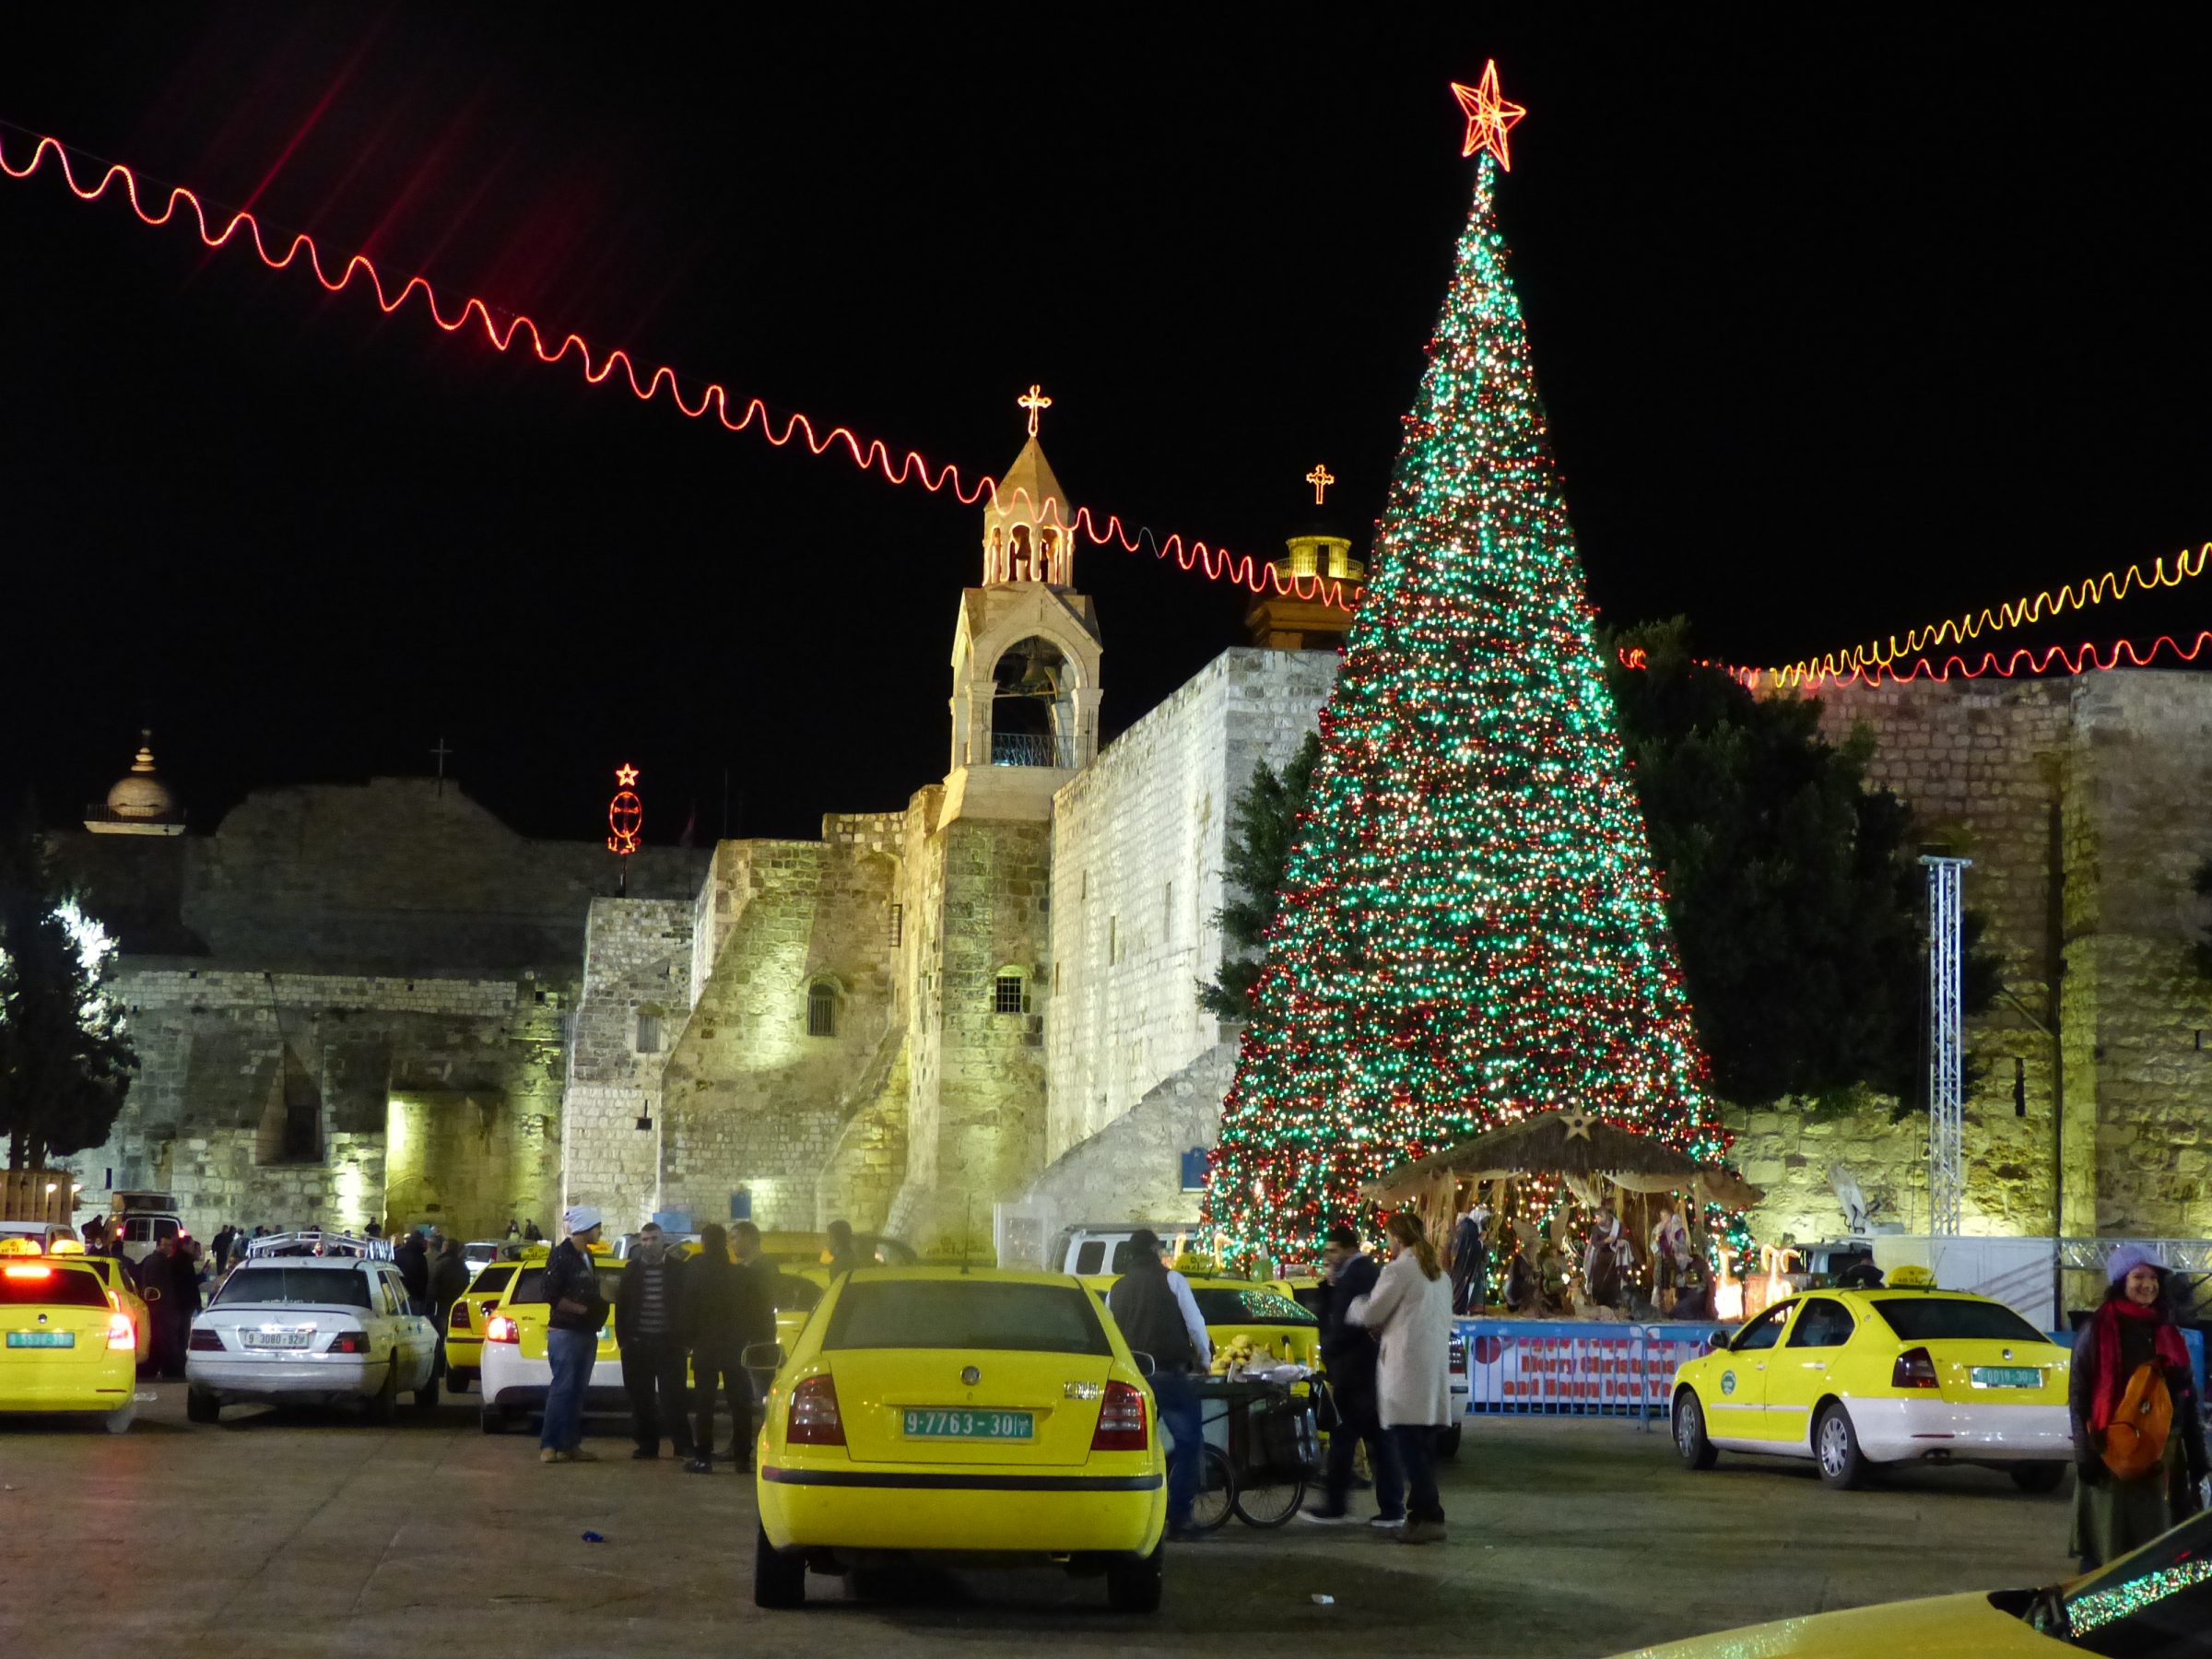 Bethlehem - Manger Square - Christmas